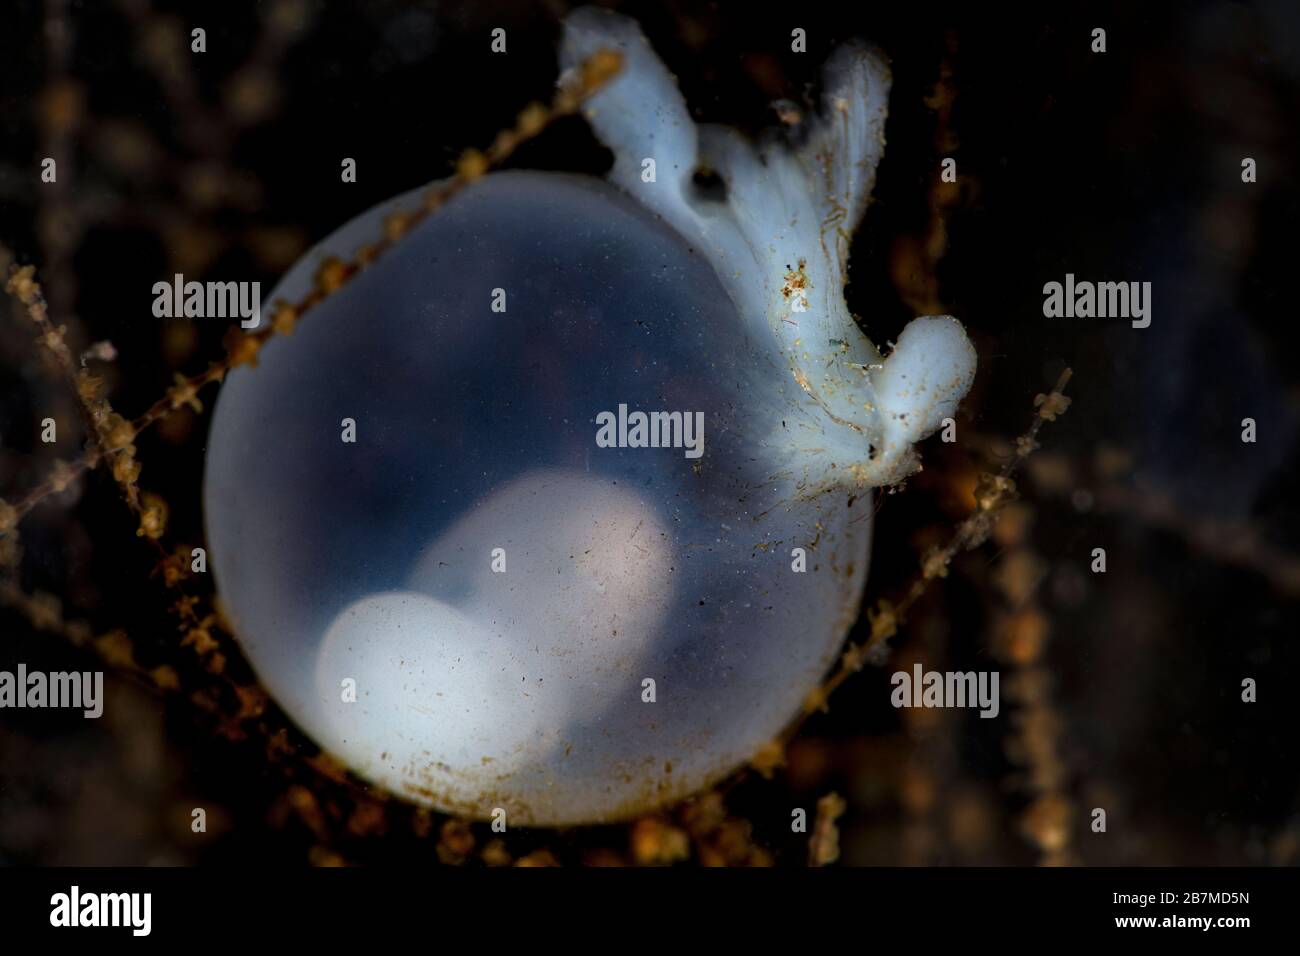 Sta emergendo una nuova vita. Uovo di seppia con embrione. Macro fotografia subacquea da Tulamben, Bali, Indonesia Foto Stock